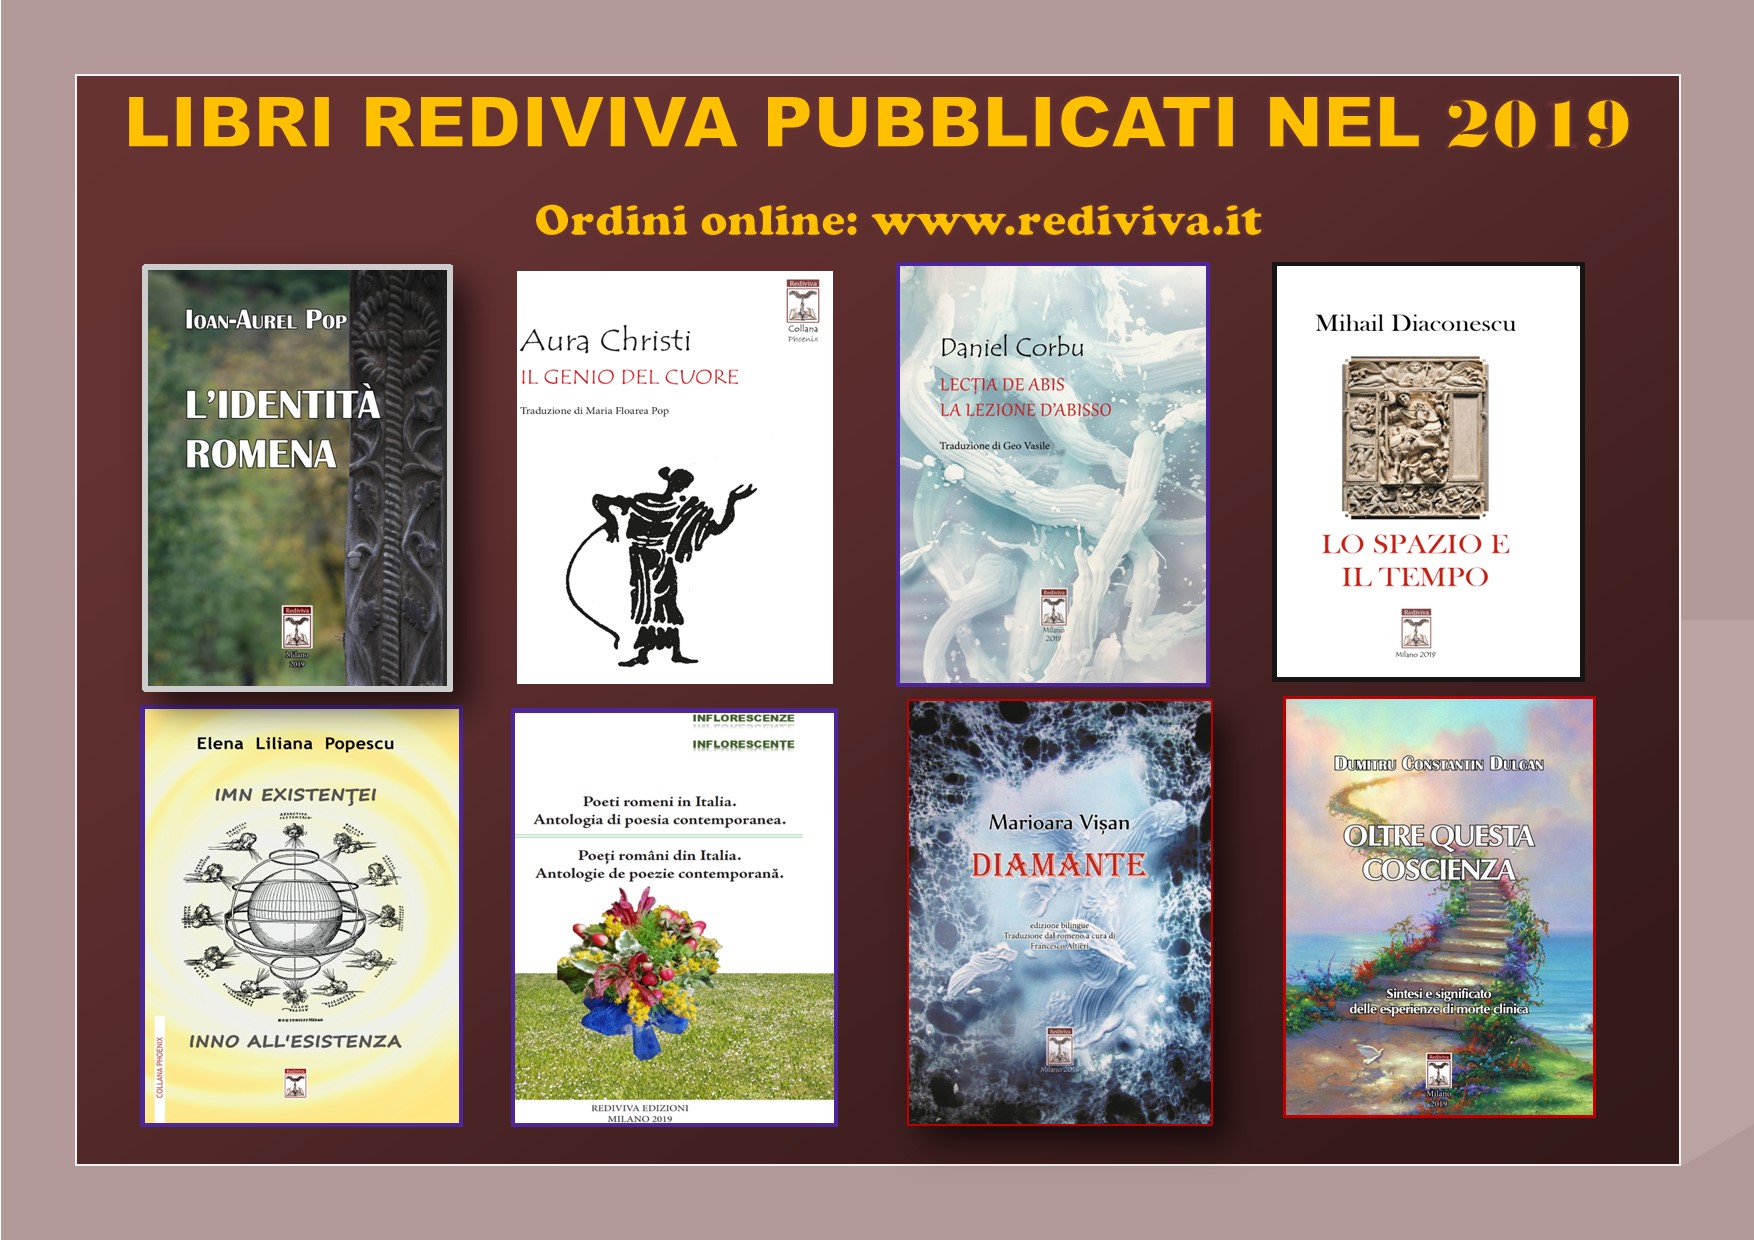 Editura Rediviva din Milano. Bilanț bogat cultural în anul 2019. Publicații și evenimente Italia-România- Elveția